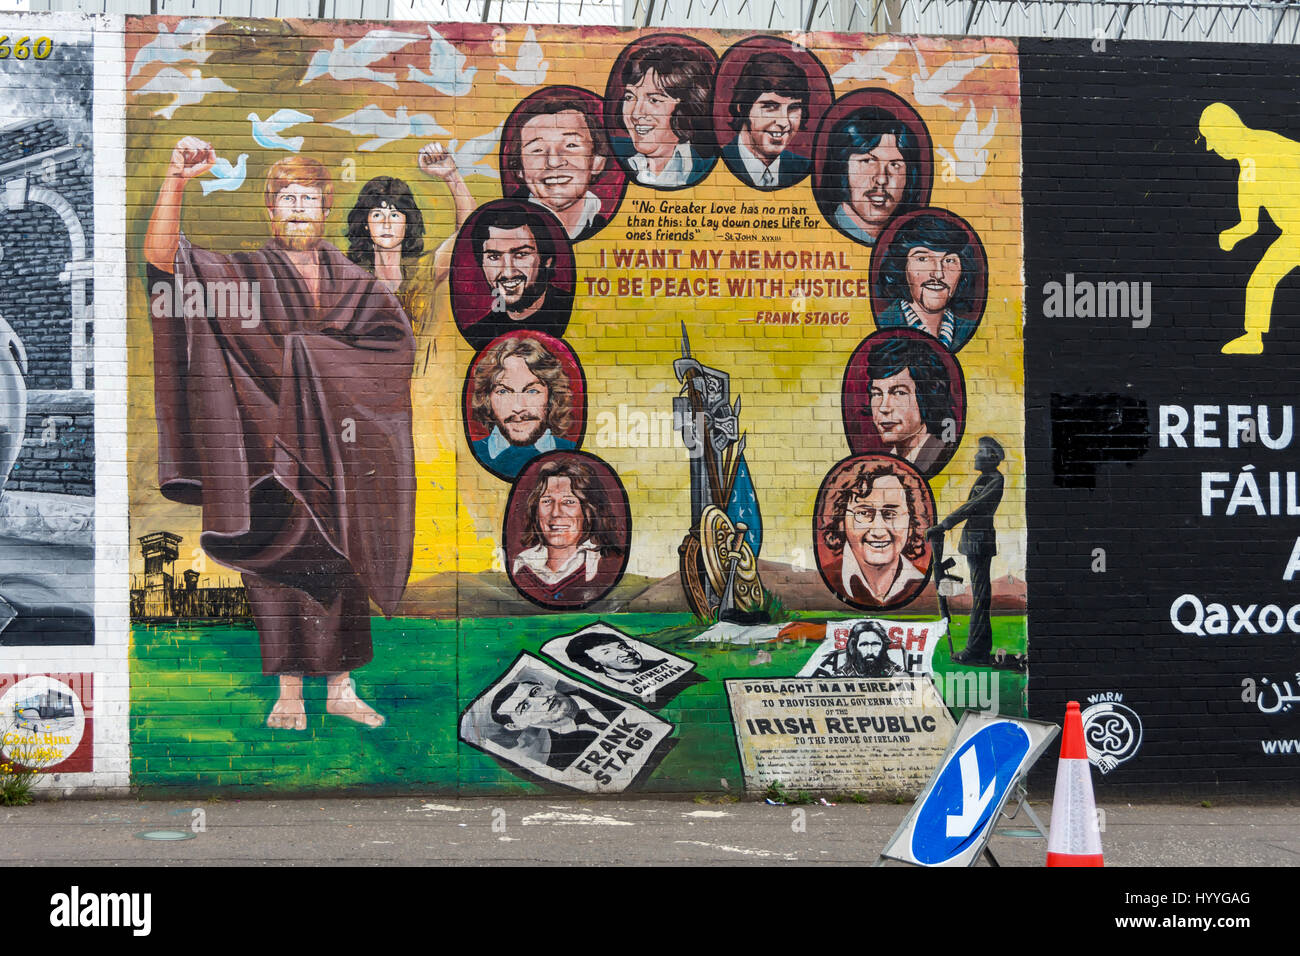 Photo murale républicaine sur le Falls Road, Belfast, County Antrim, Northern Ireland, UK Banque D'Images